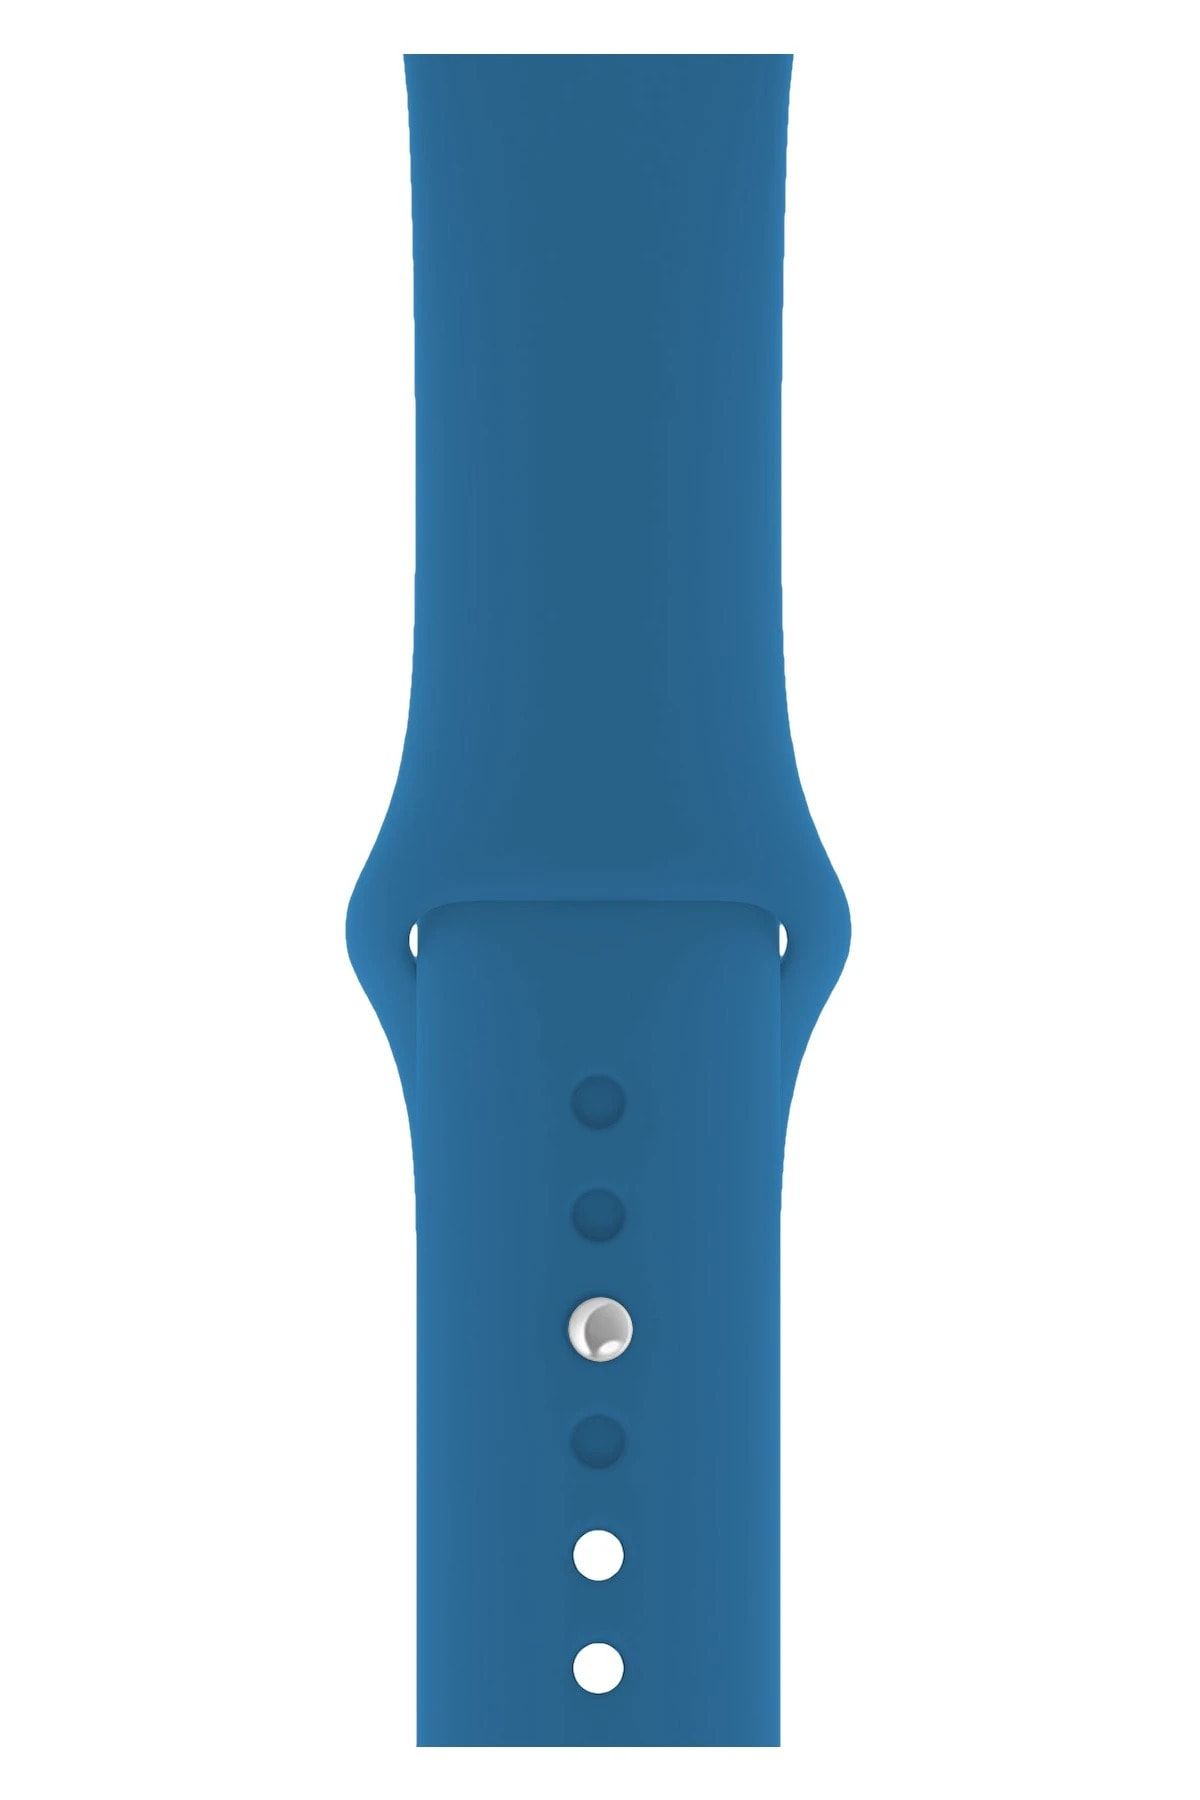 Fibaks Apple Watch 42mm Mavi Spor Klasik Silikon Kordon